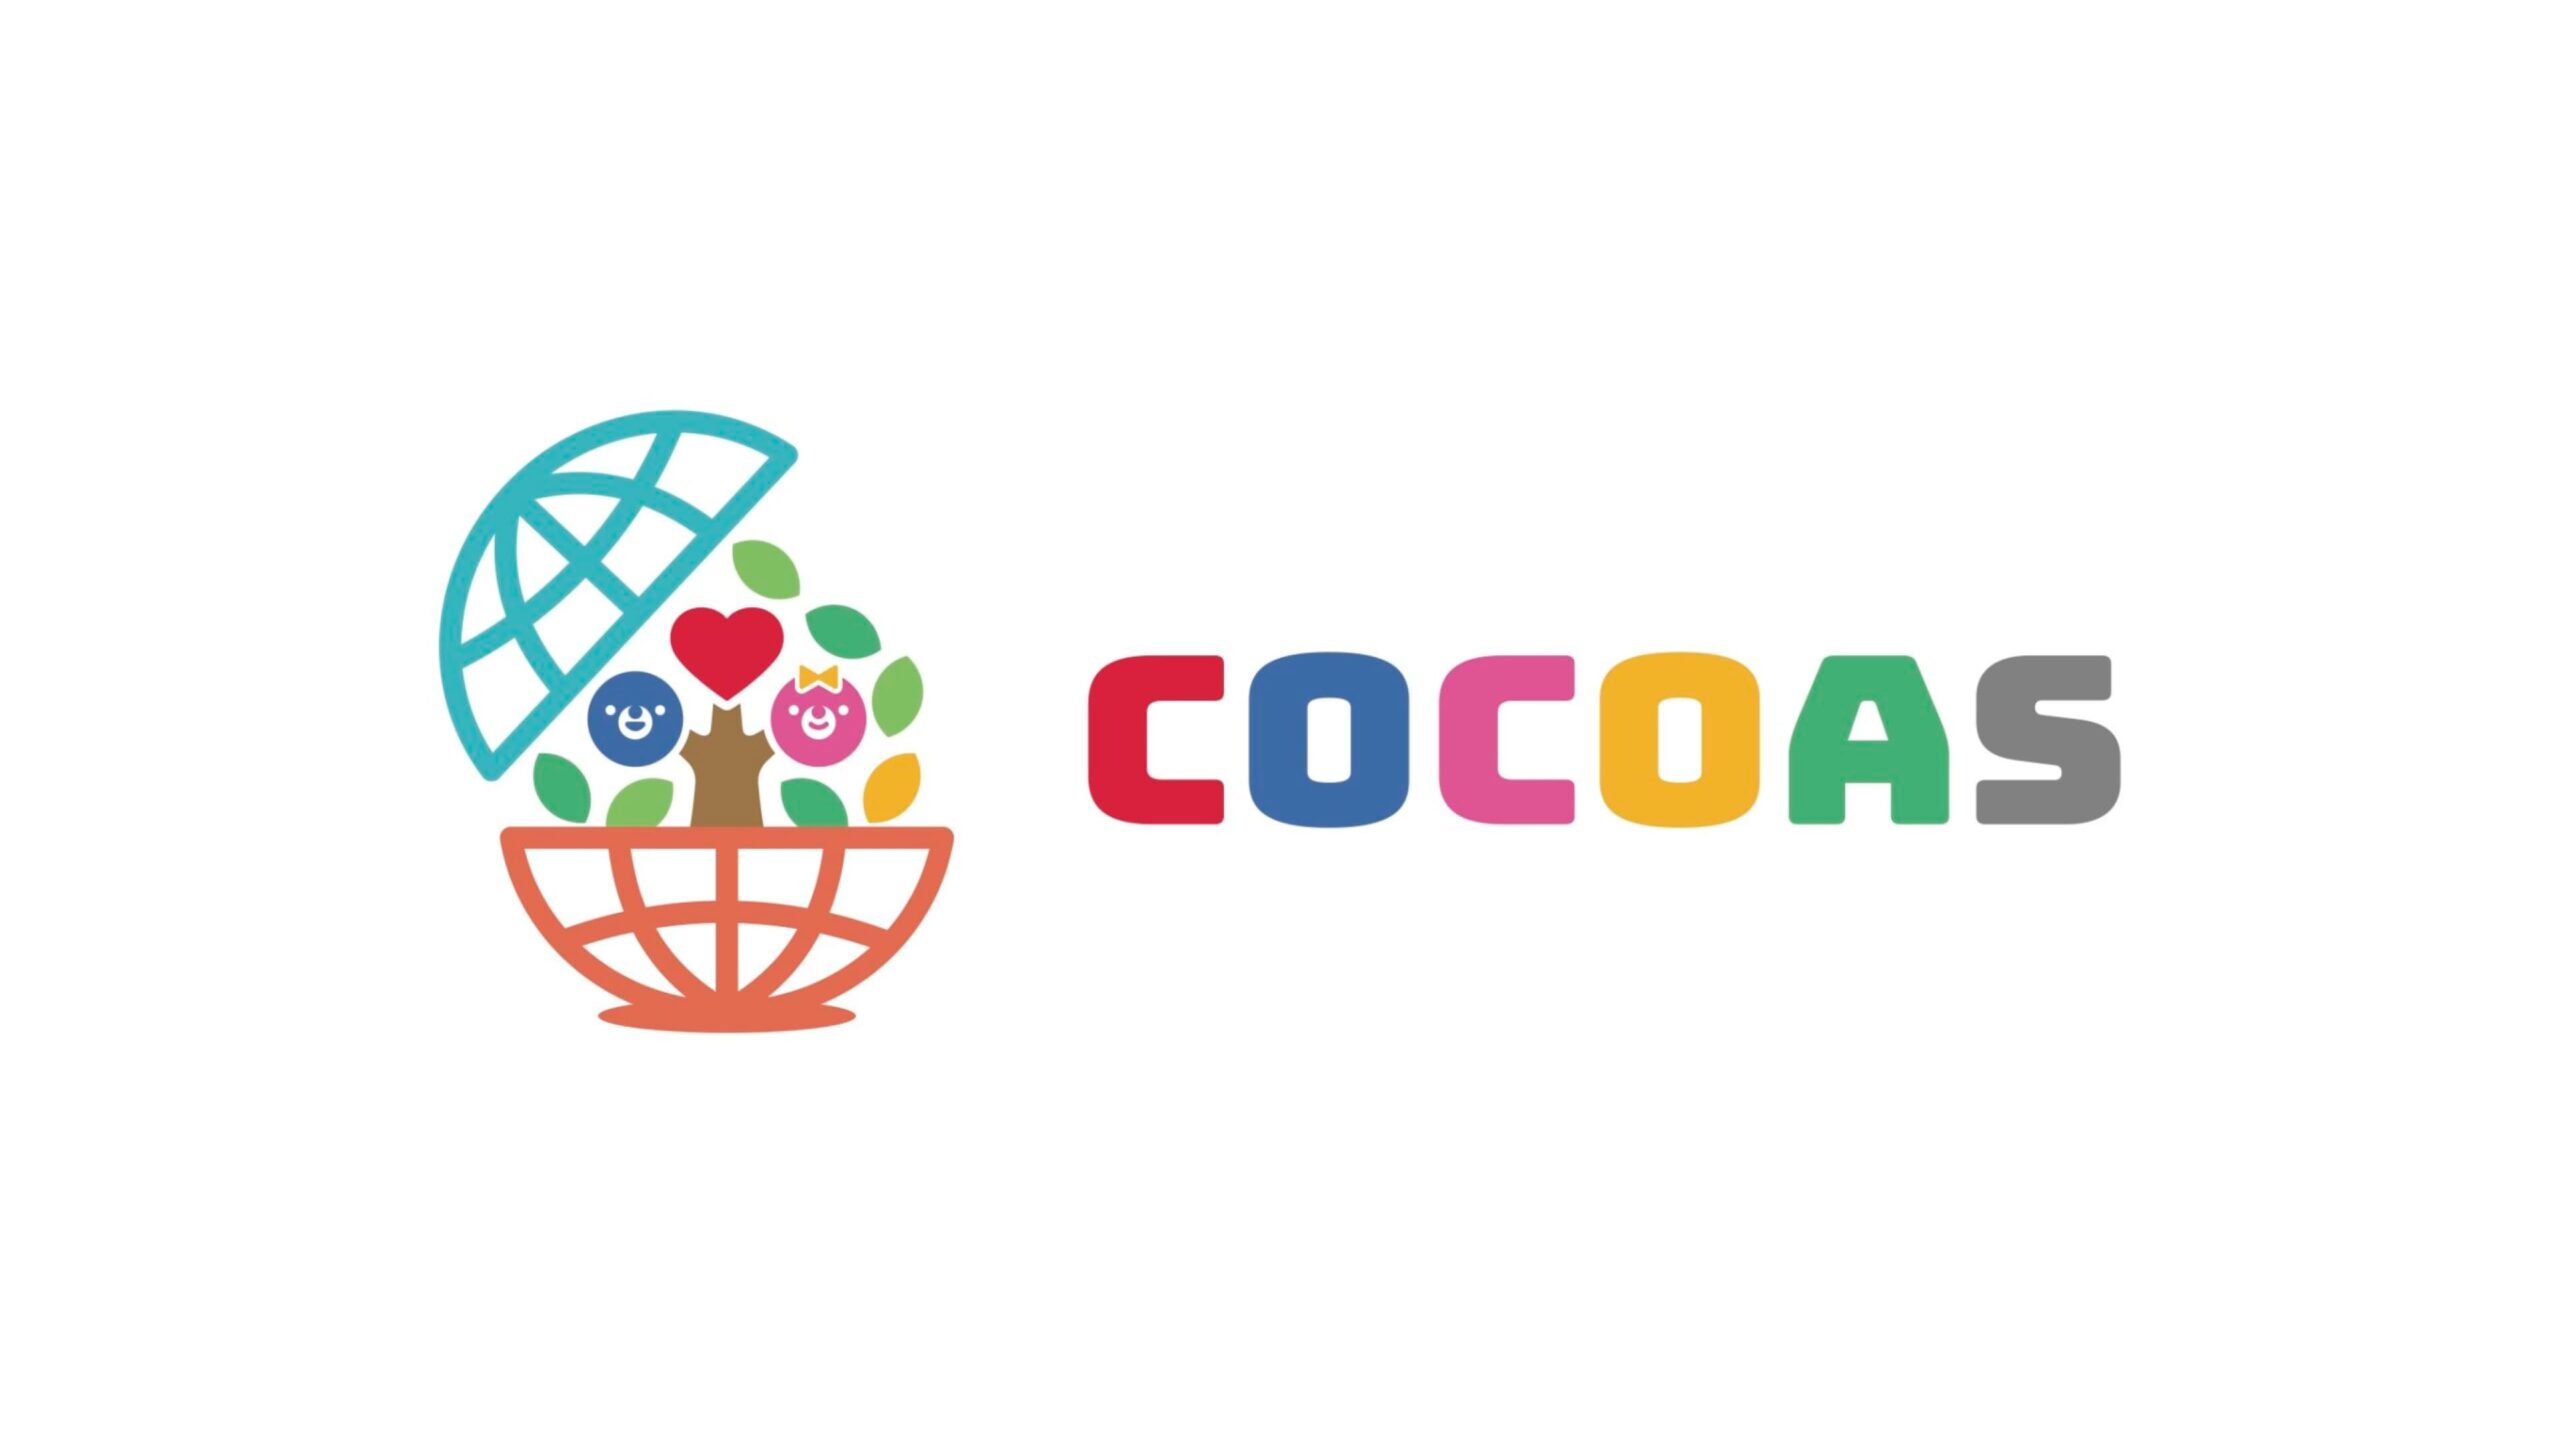 「未来のグローバルリーダー」を育てるCOCOASが愛知キャピタル、株式会社ミライプロジェクトらから約5000万円を調達